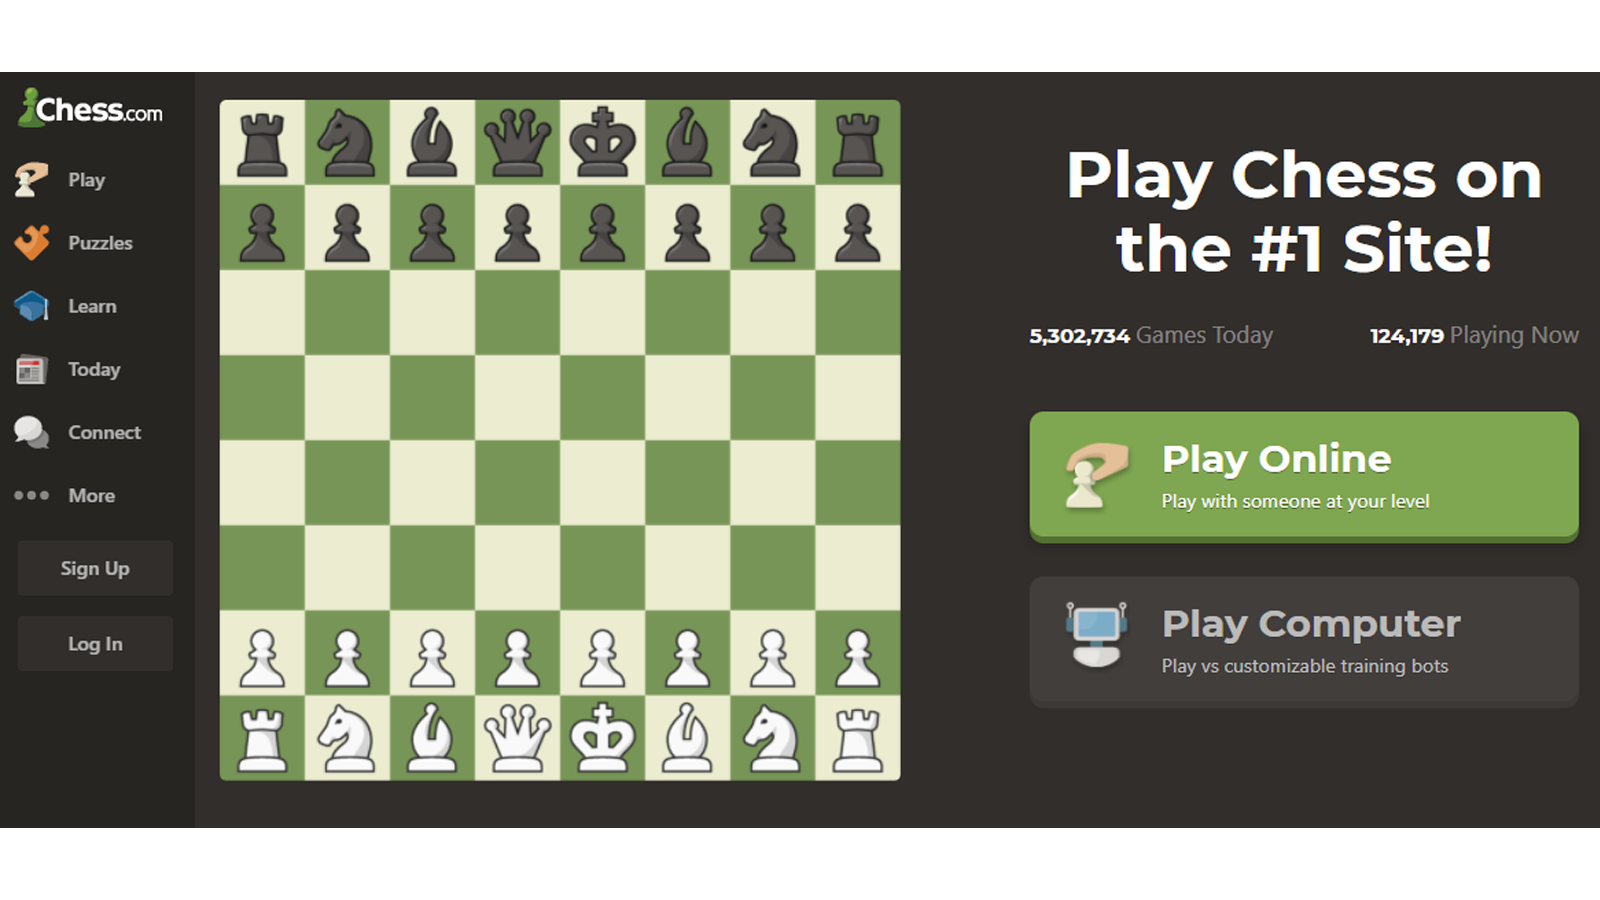 trang chủ cờ vua.com với các tùy chọn để chơi trò chơi hoặc đăng ký